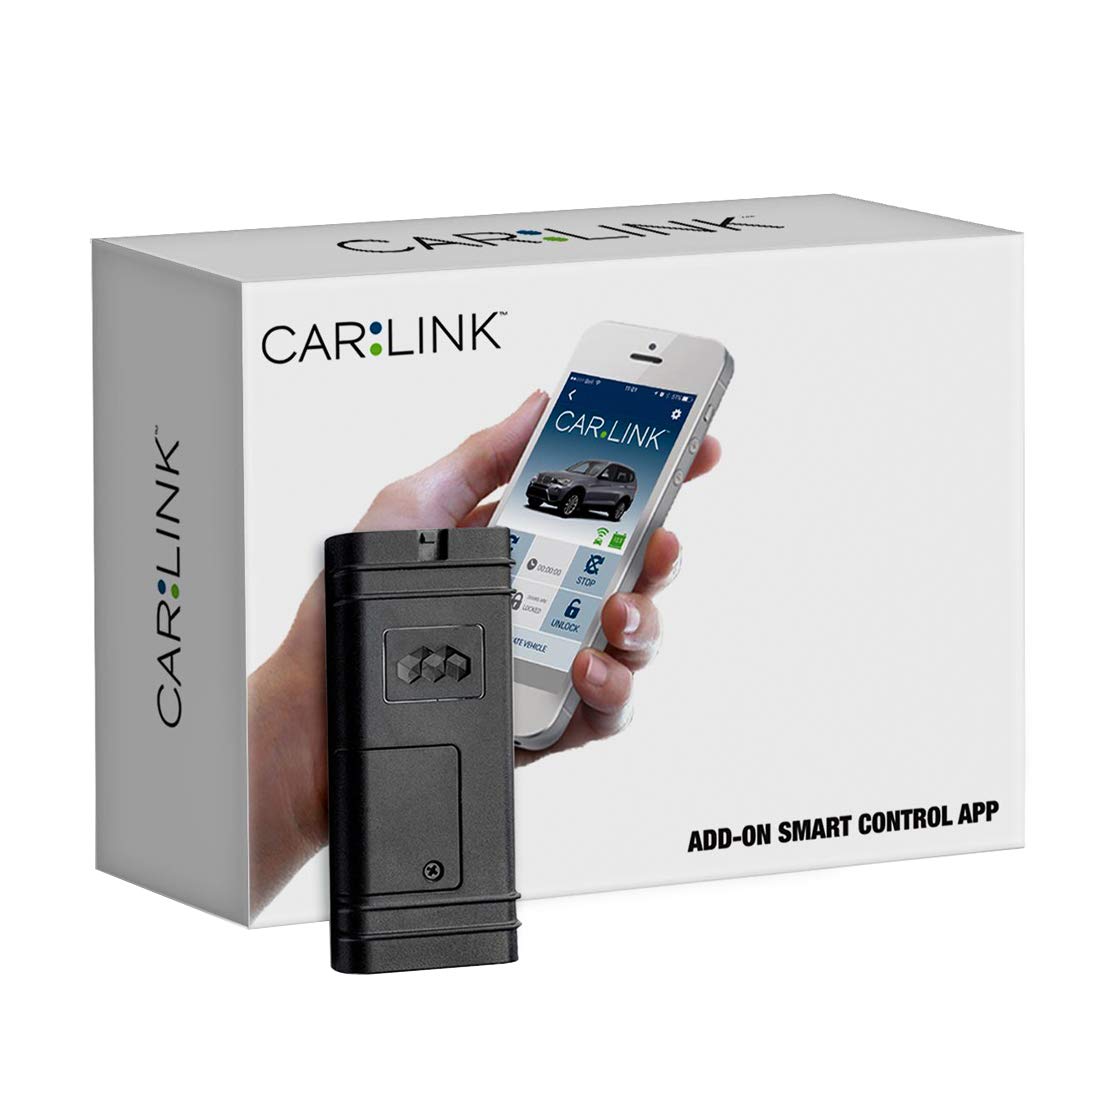 CARLINK ASCL6 远程启动蜂窝接口模块可让您通过手机启动汽车 保修 1 年